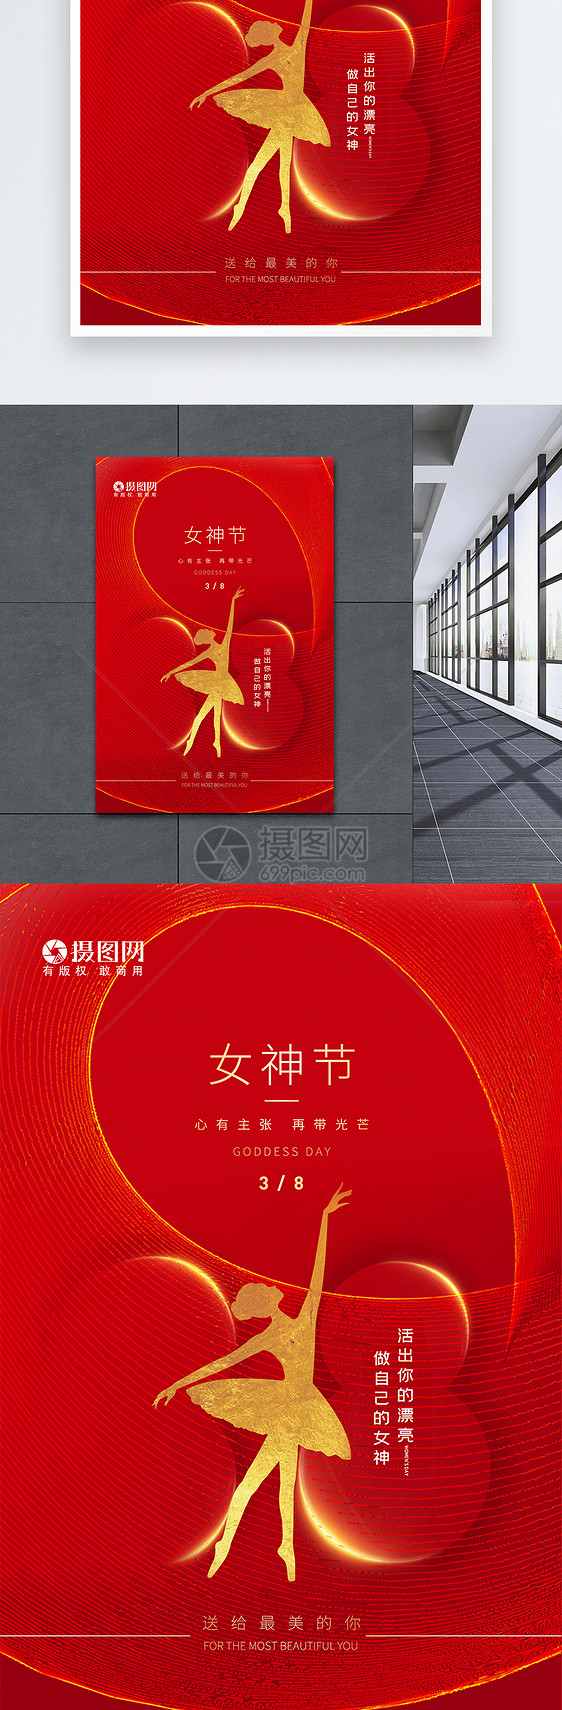 清新简约红色创意38女神节海报图片